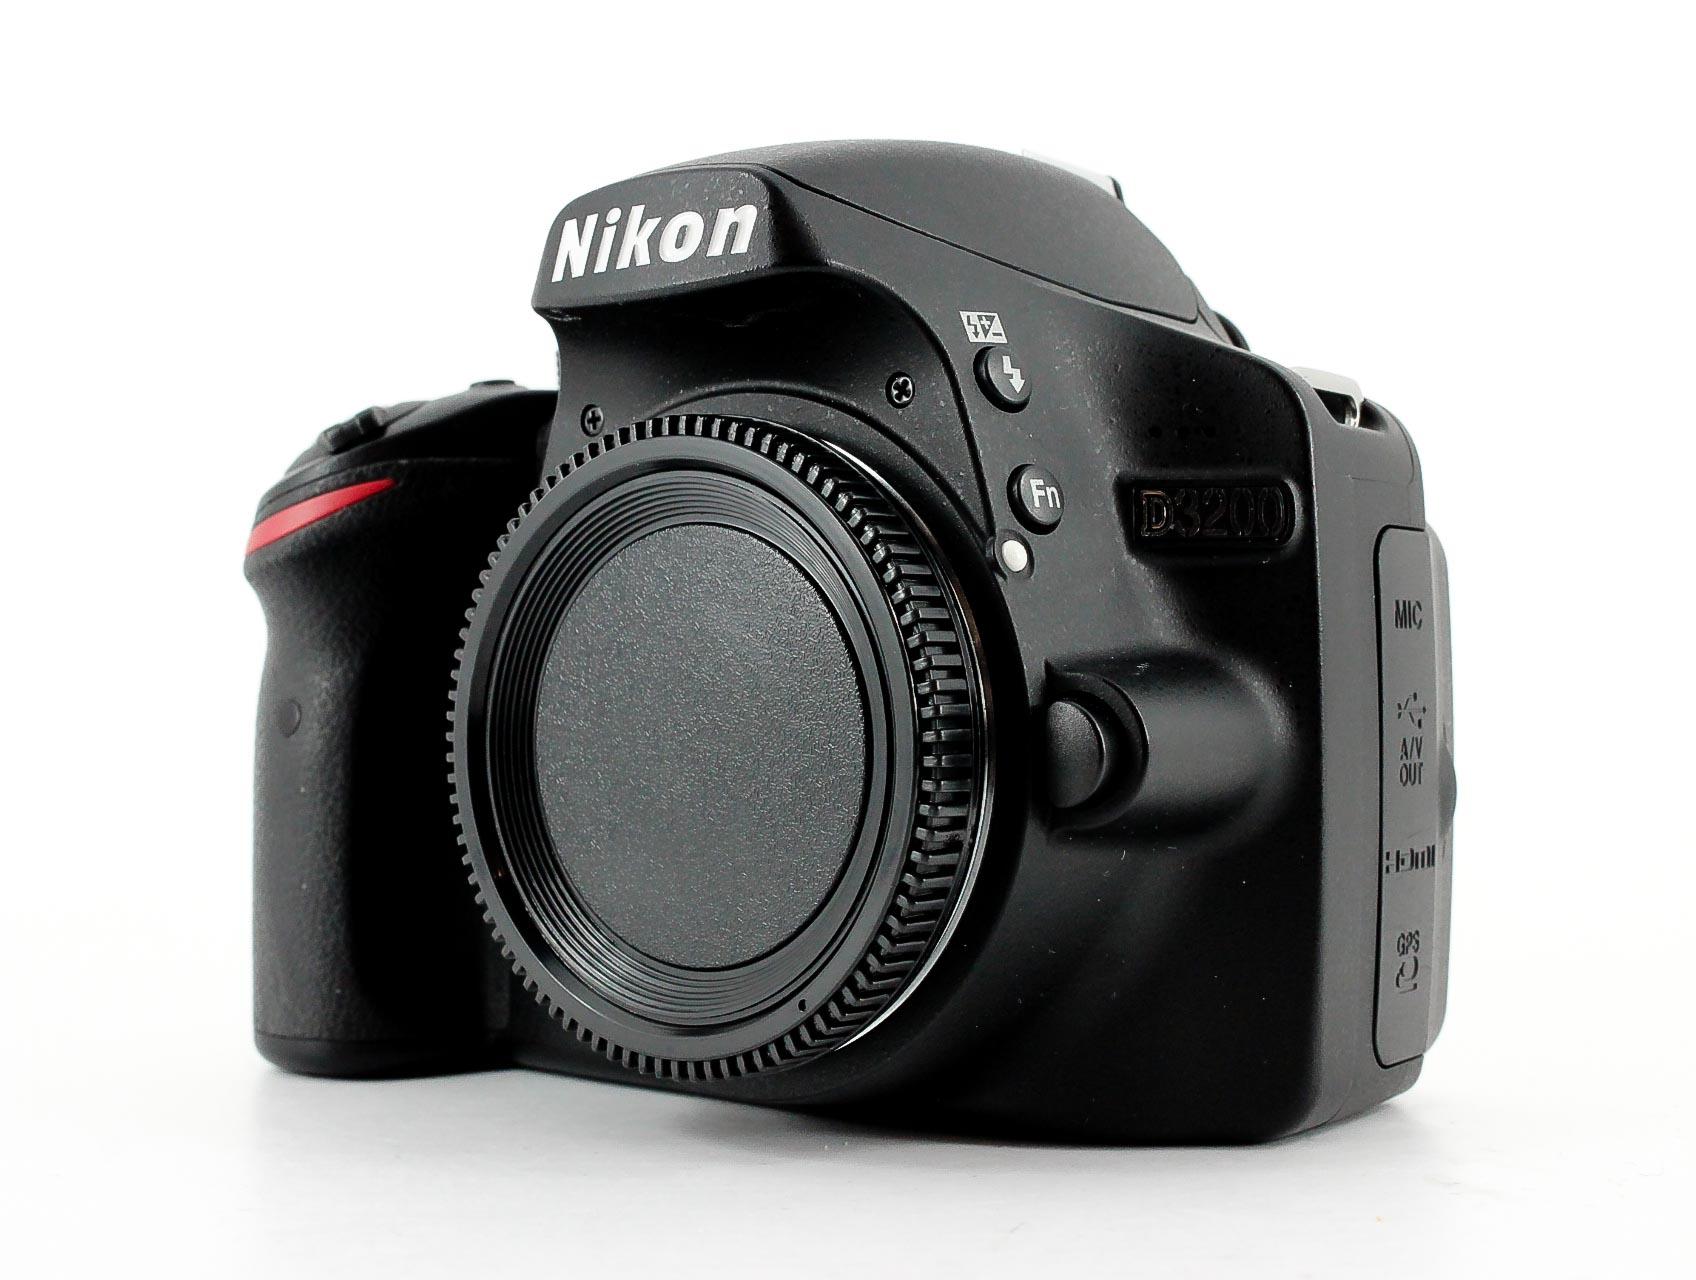 Nikon D3200 BLACK - jasaantirayapsurabaya.com